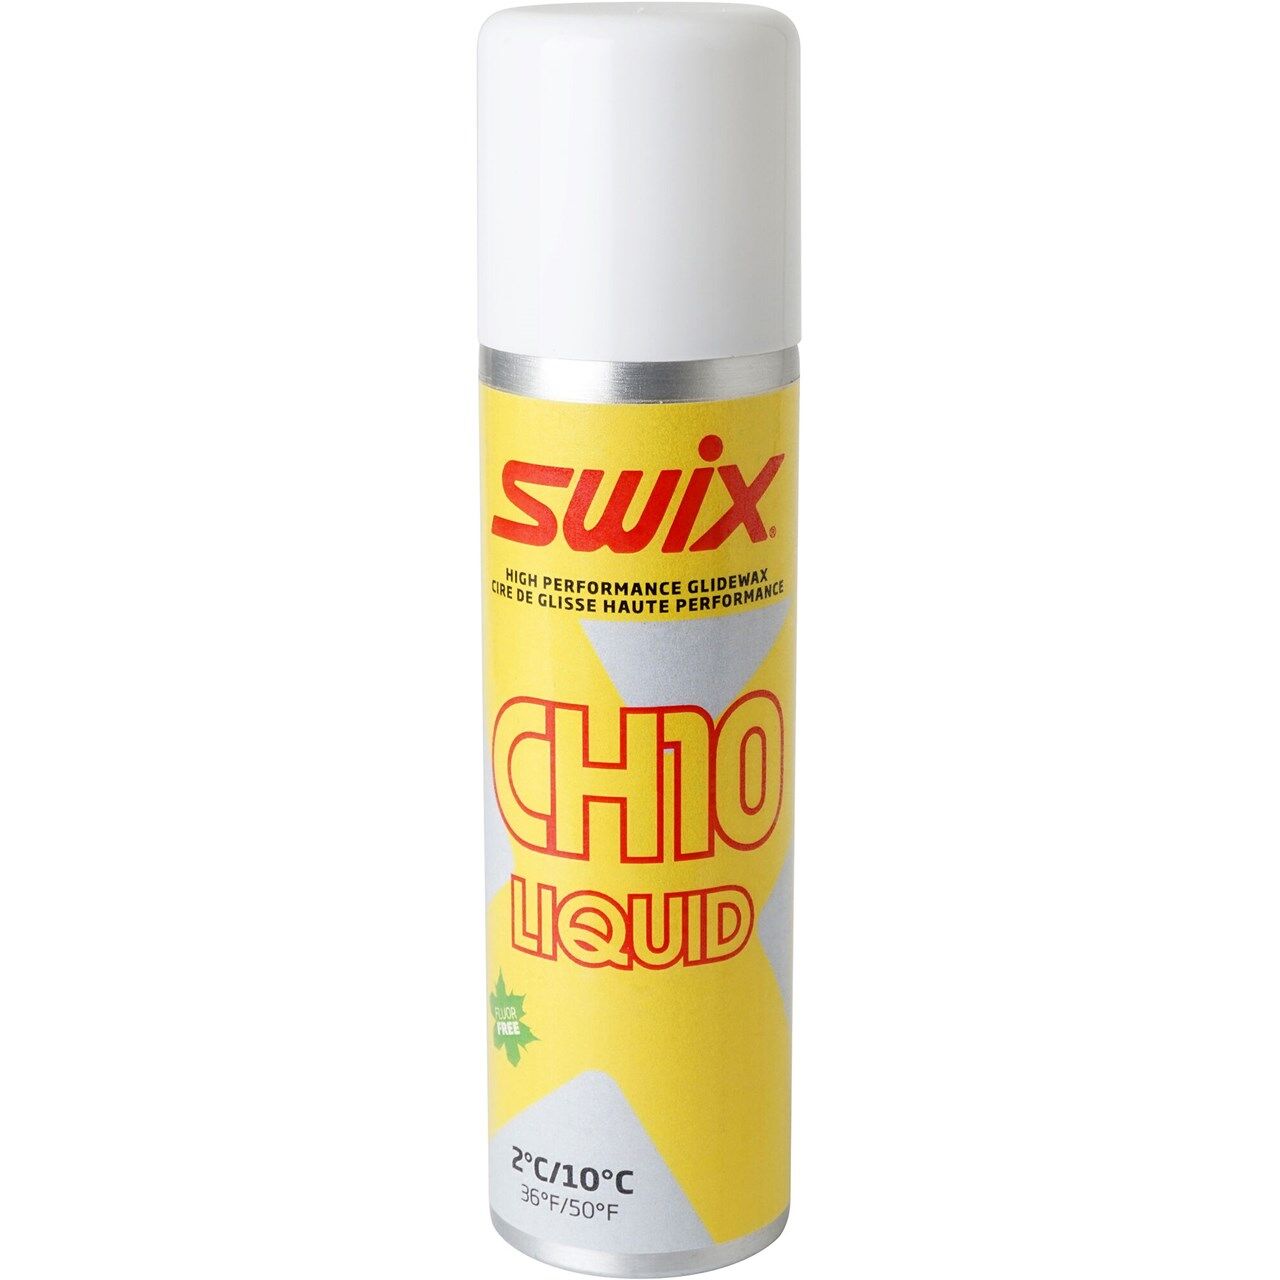 Swix CH10X Liquid 2C/10C (125ml) - Suksivahat